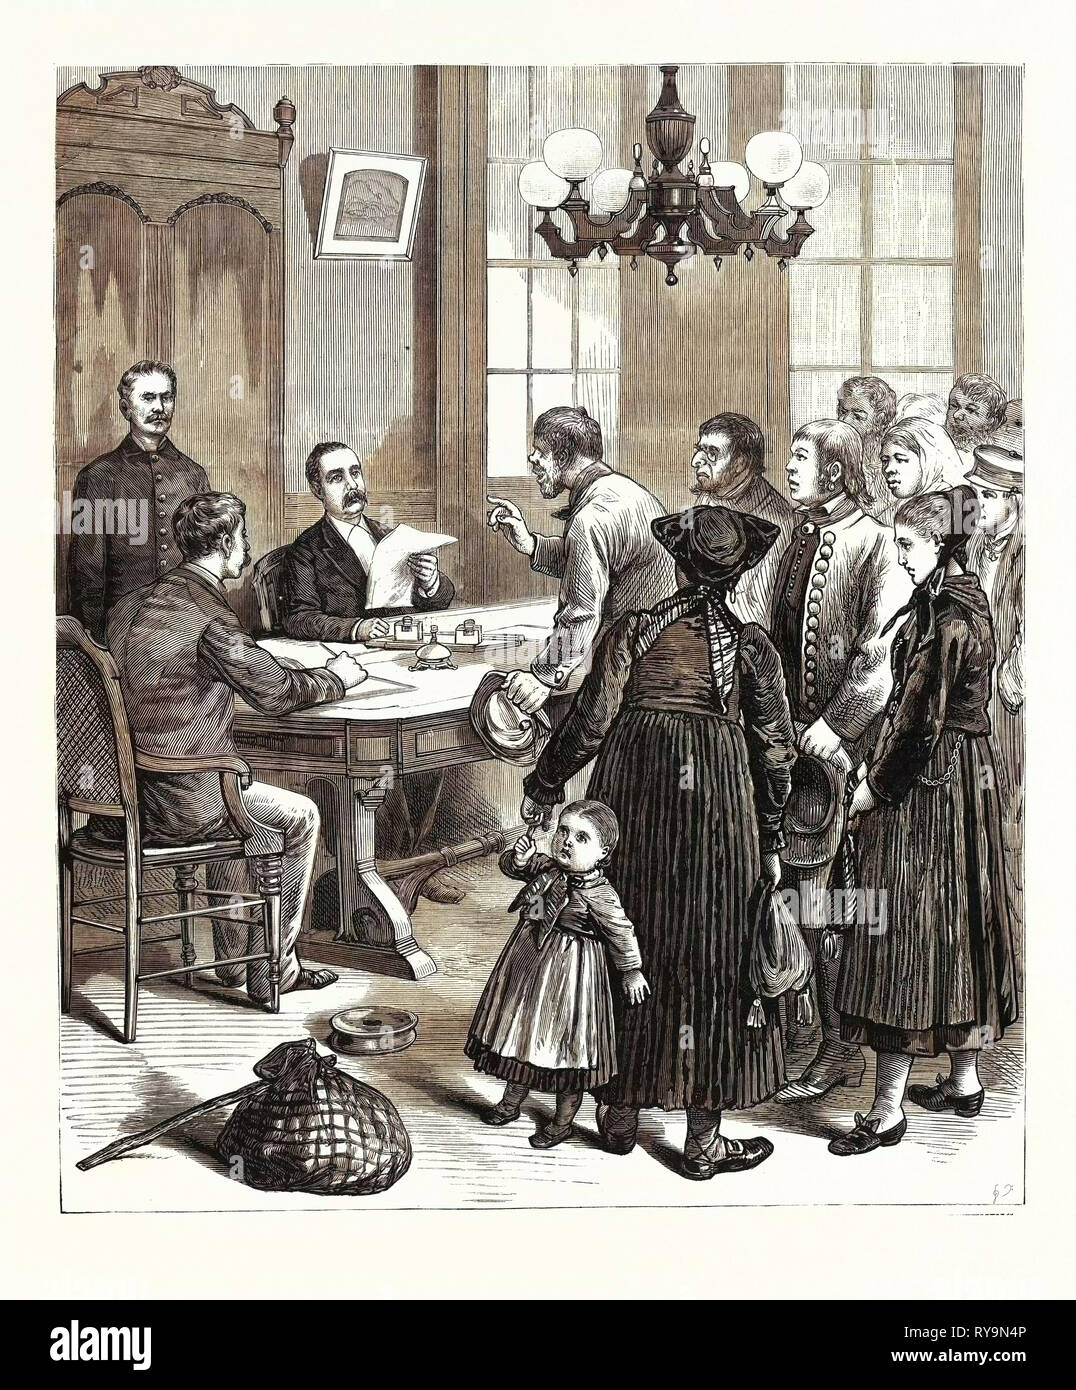 New York: il grande lavoro di stato Commissari di emigrazione, sovrintendente Jackson ascoltare le lamentele degli emigranti nel suo ufficio, il giardino del castello. Stati Uniti, incisione 1880 1881 Foto Stock